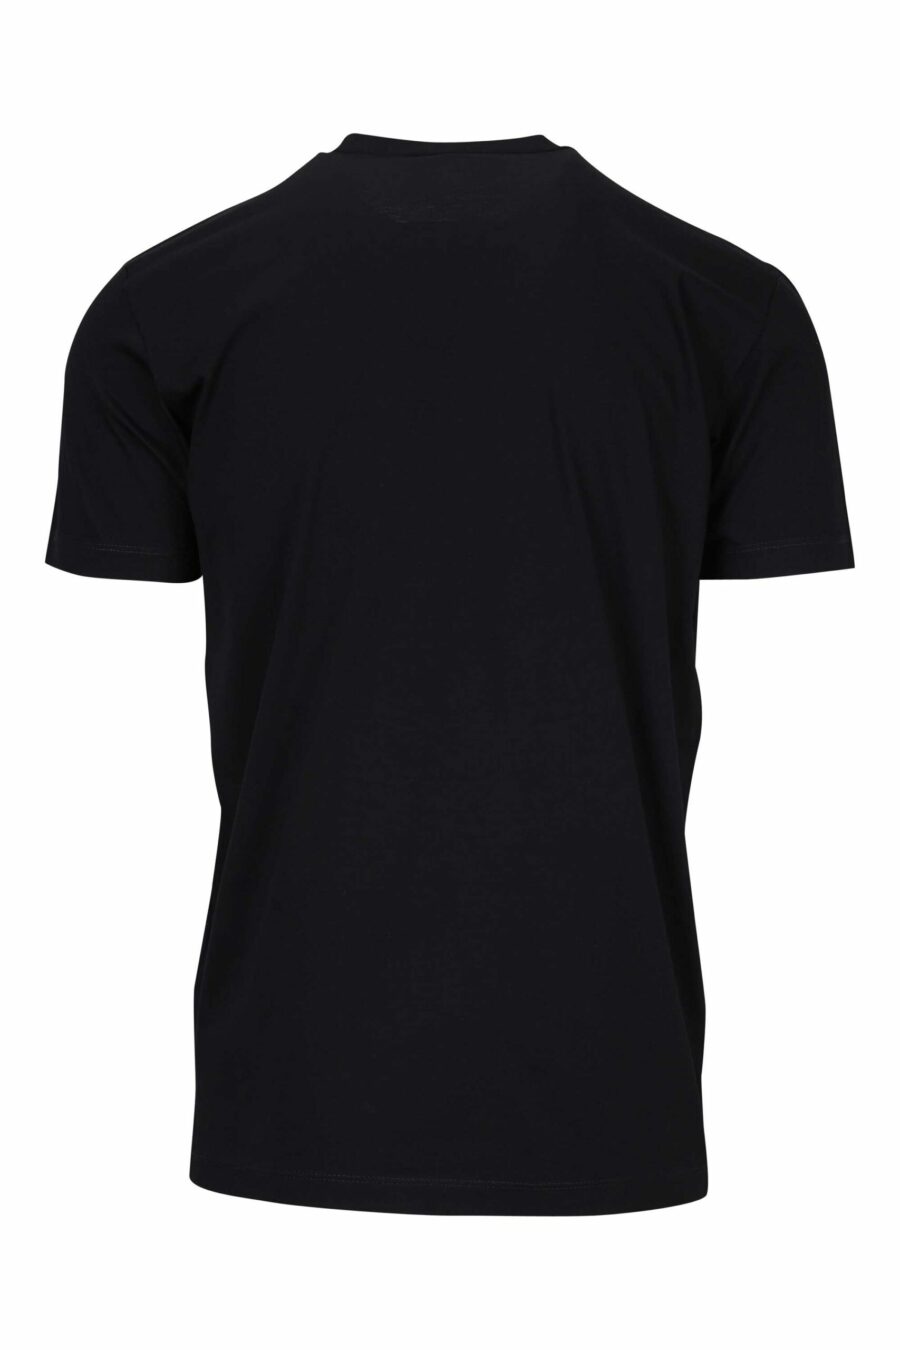 T-shirt preta com carimbos do logótipo "icon" - 8054148362744 1 à escala